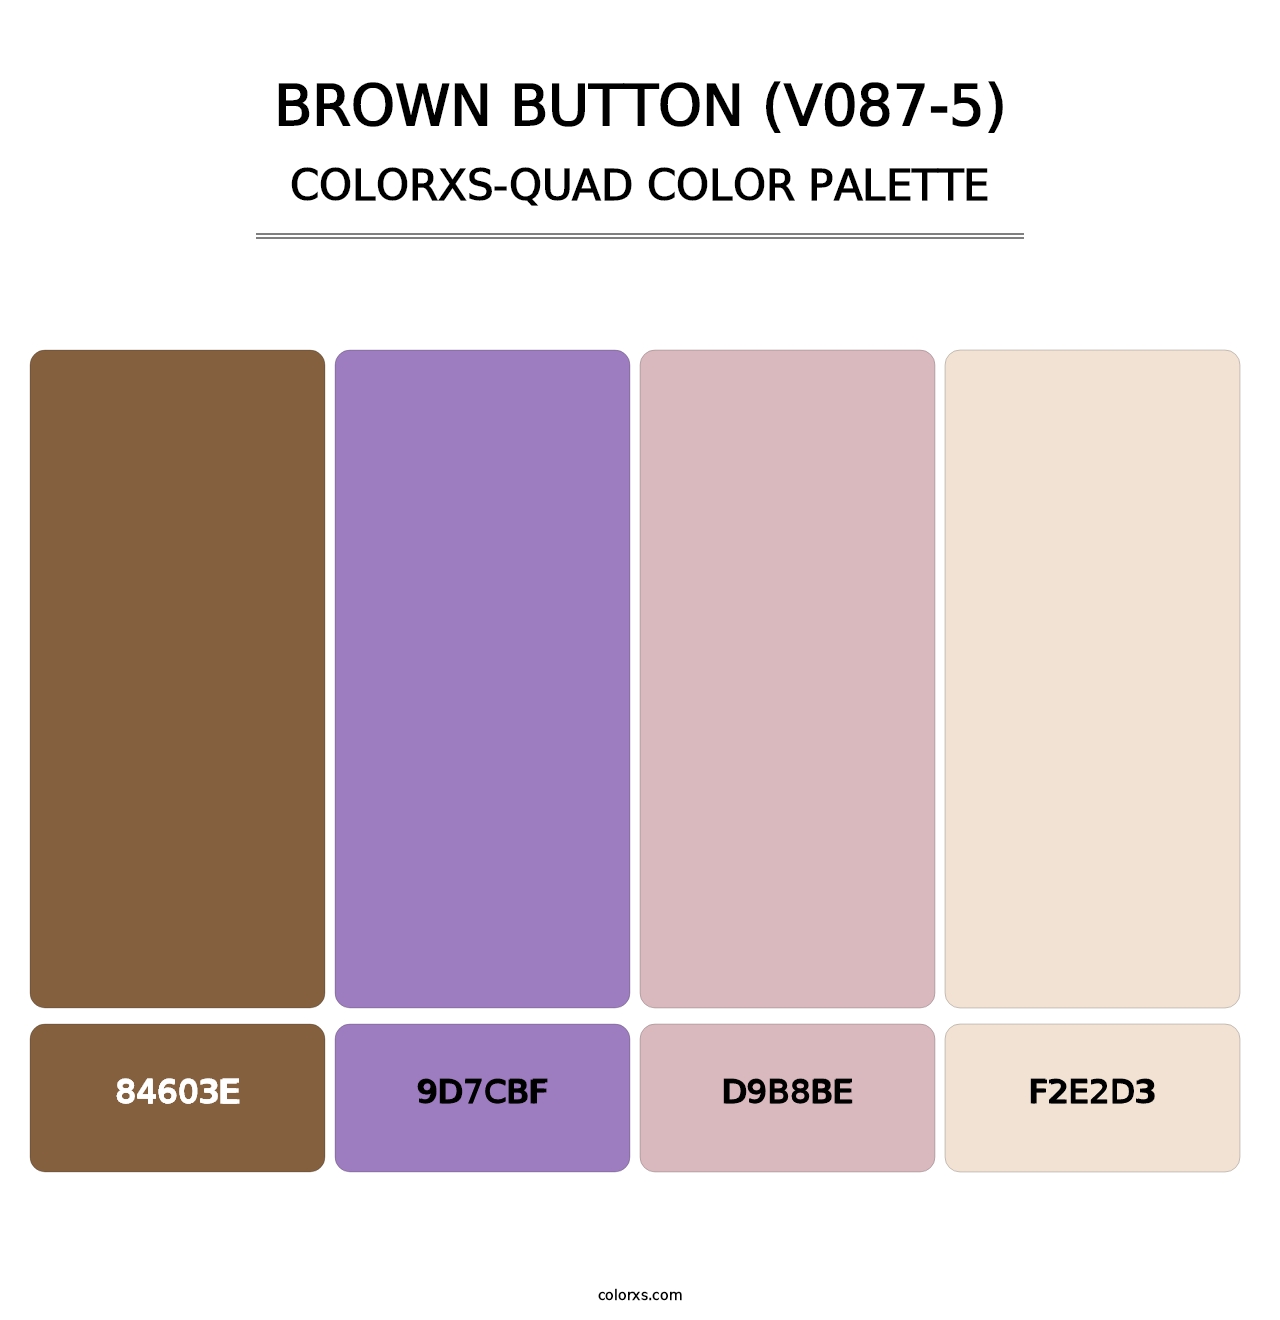 Brown Button (V087-5) - Colorxs Quad Palette